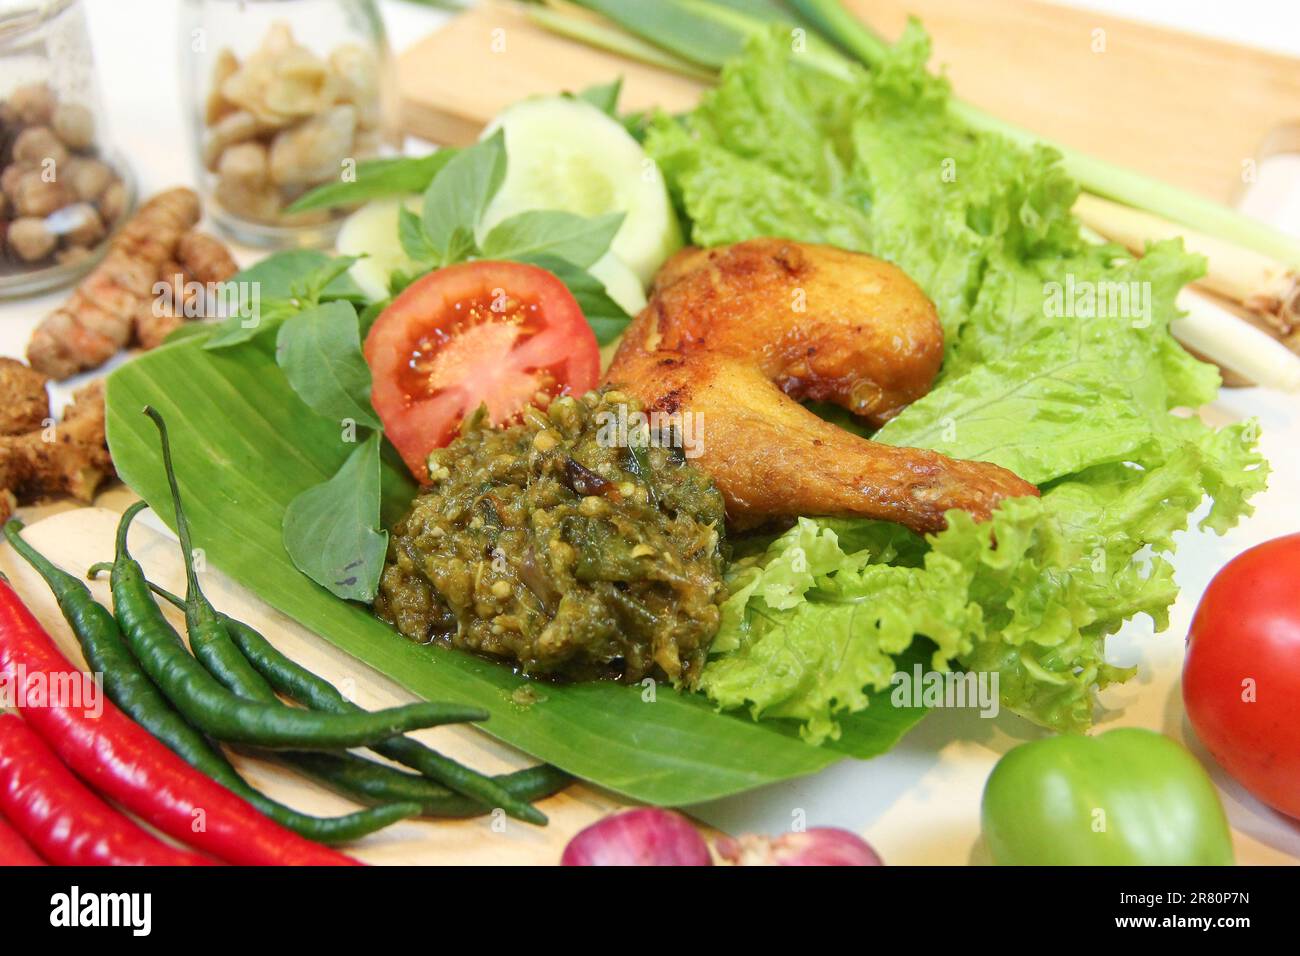 Galangal gebratenes Hähnchen, Sambal, Tomaten, Gurke, Basilikum, Salat. Indonesische Küche auf Bananenblatt-Teller. Gastronomie Fotografie und Zutaten Gewürze Stockfoto